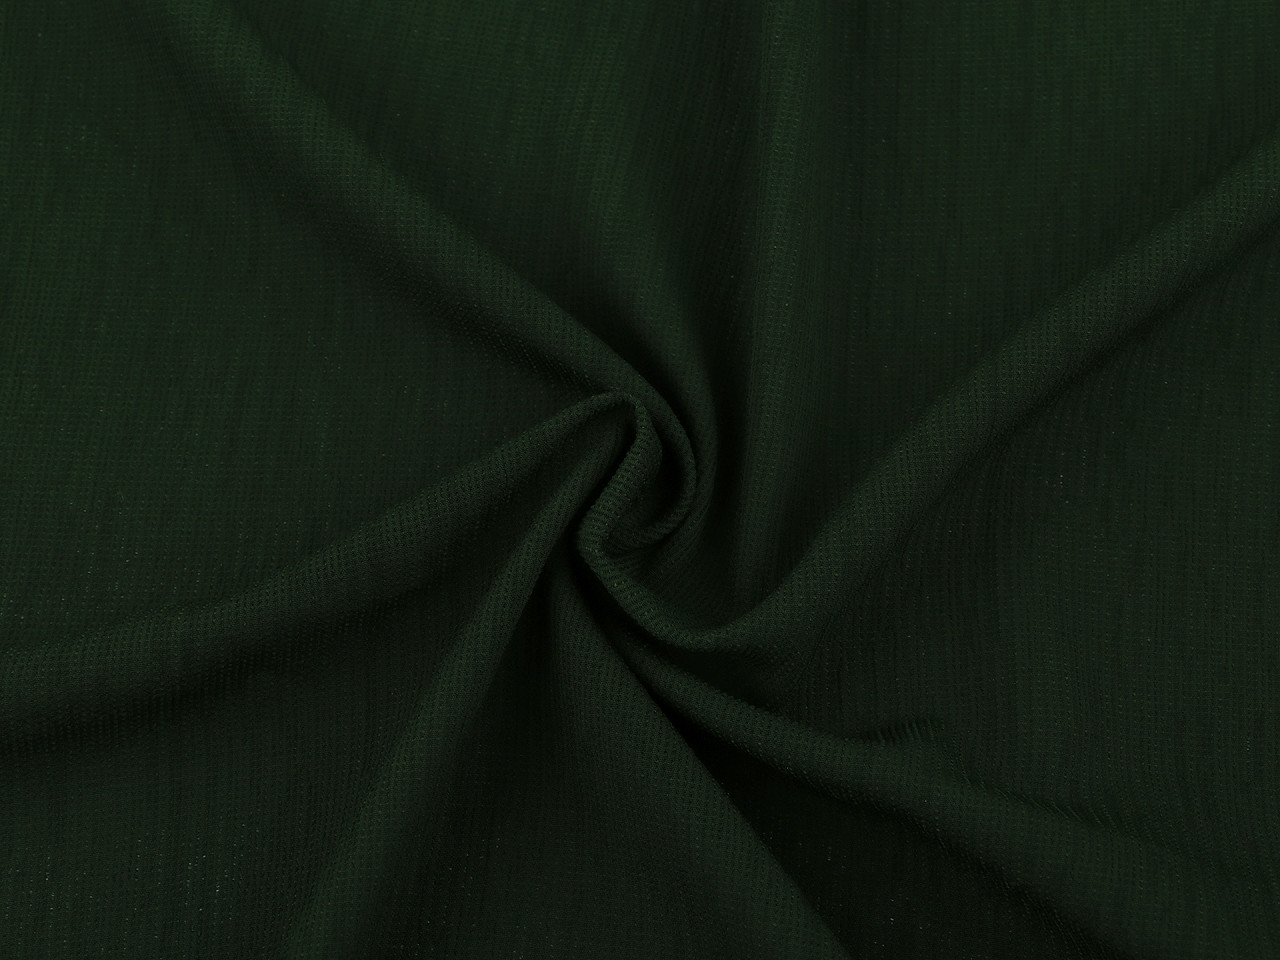 Šatovka krešovaná, barva 9 zelená myslivecká